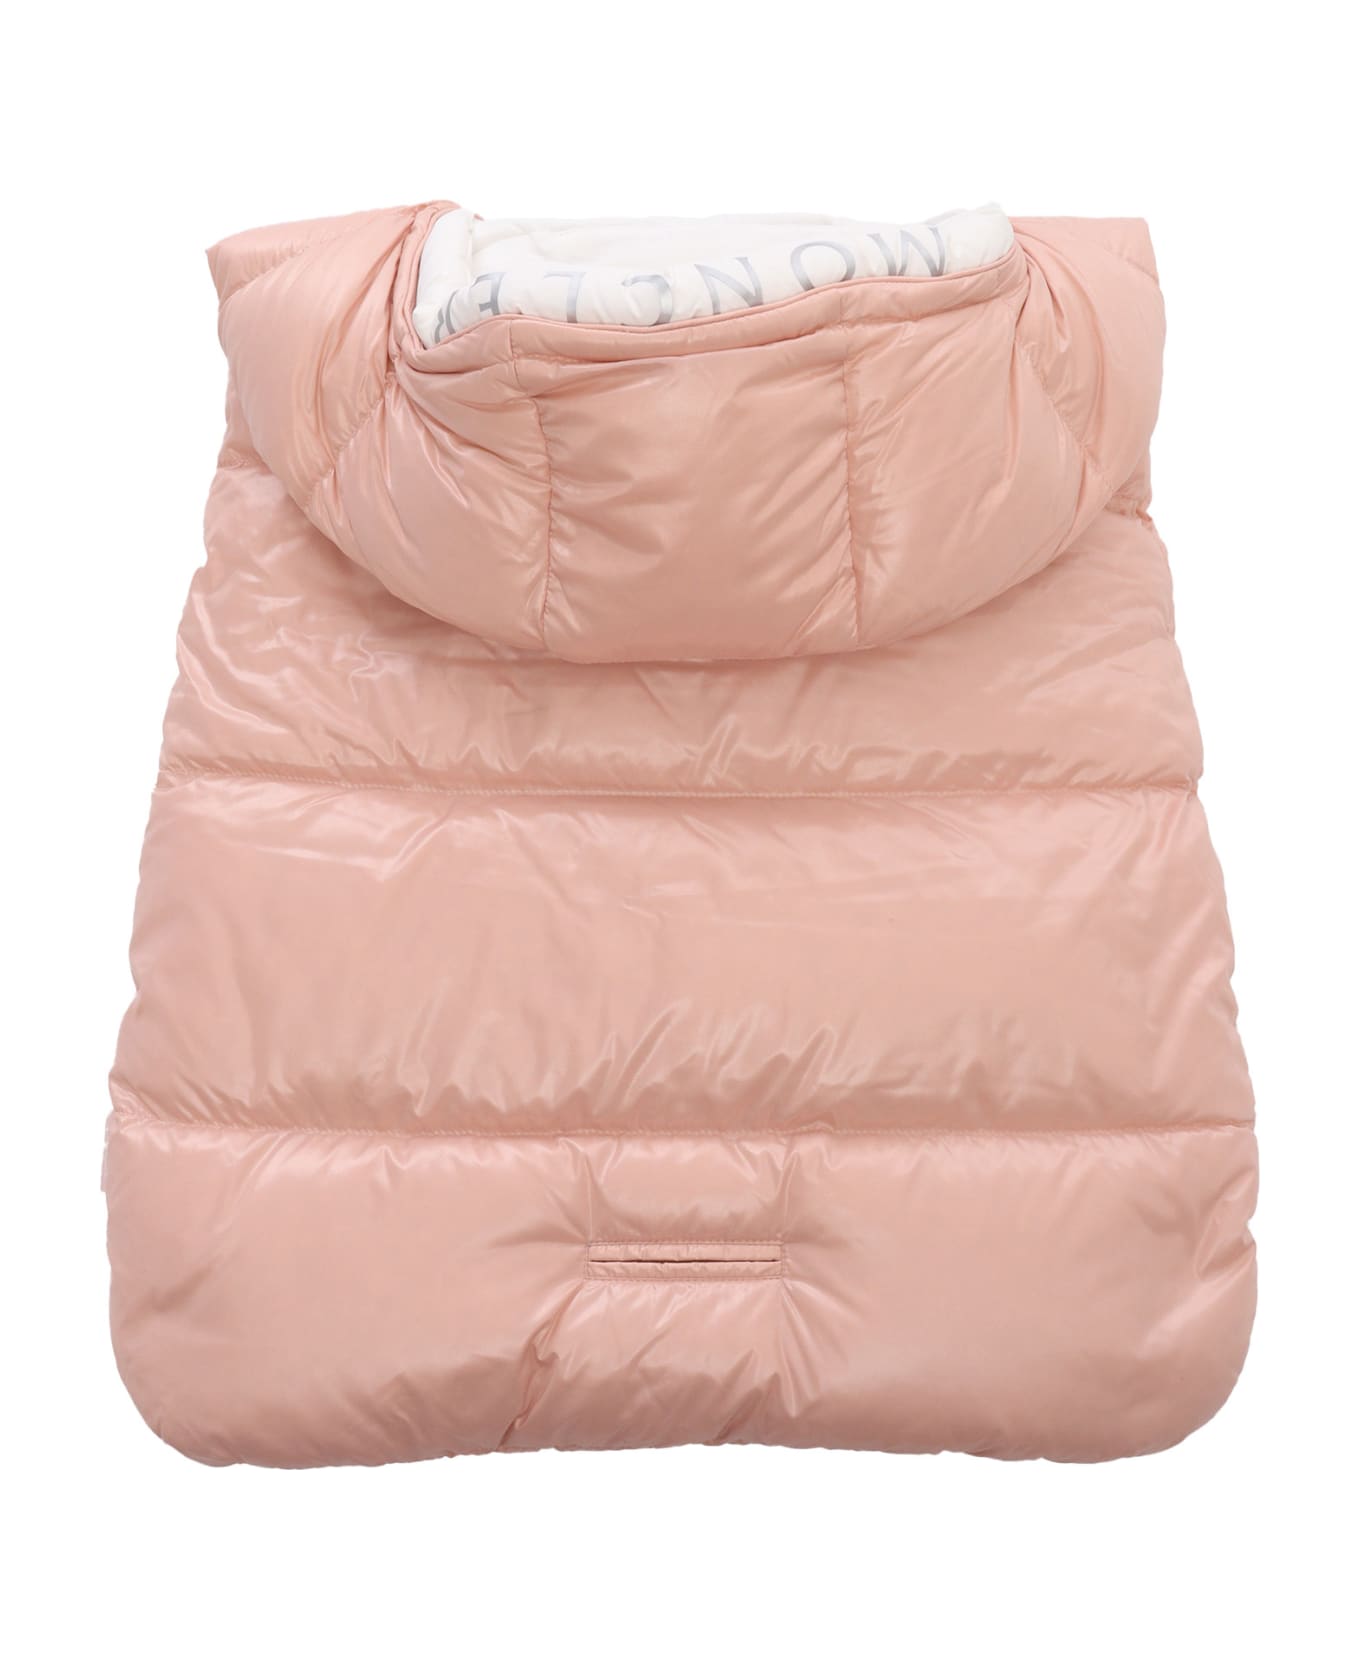 Moncler Padded Sleeping Bag - PINK